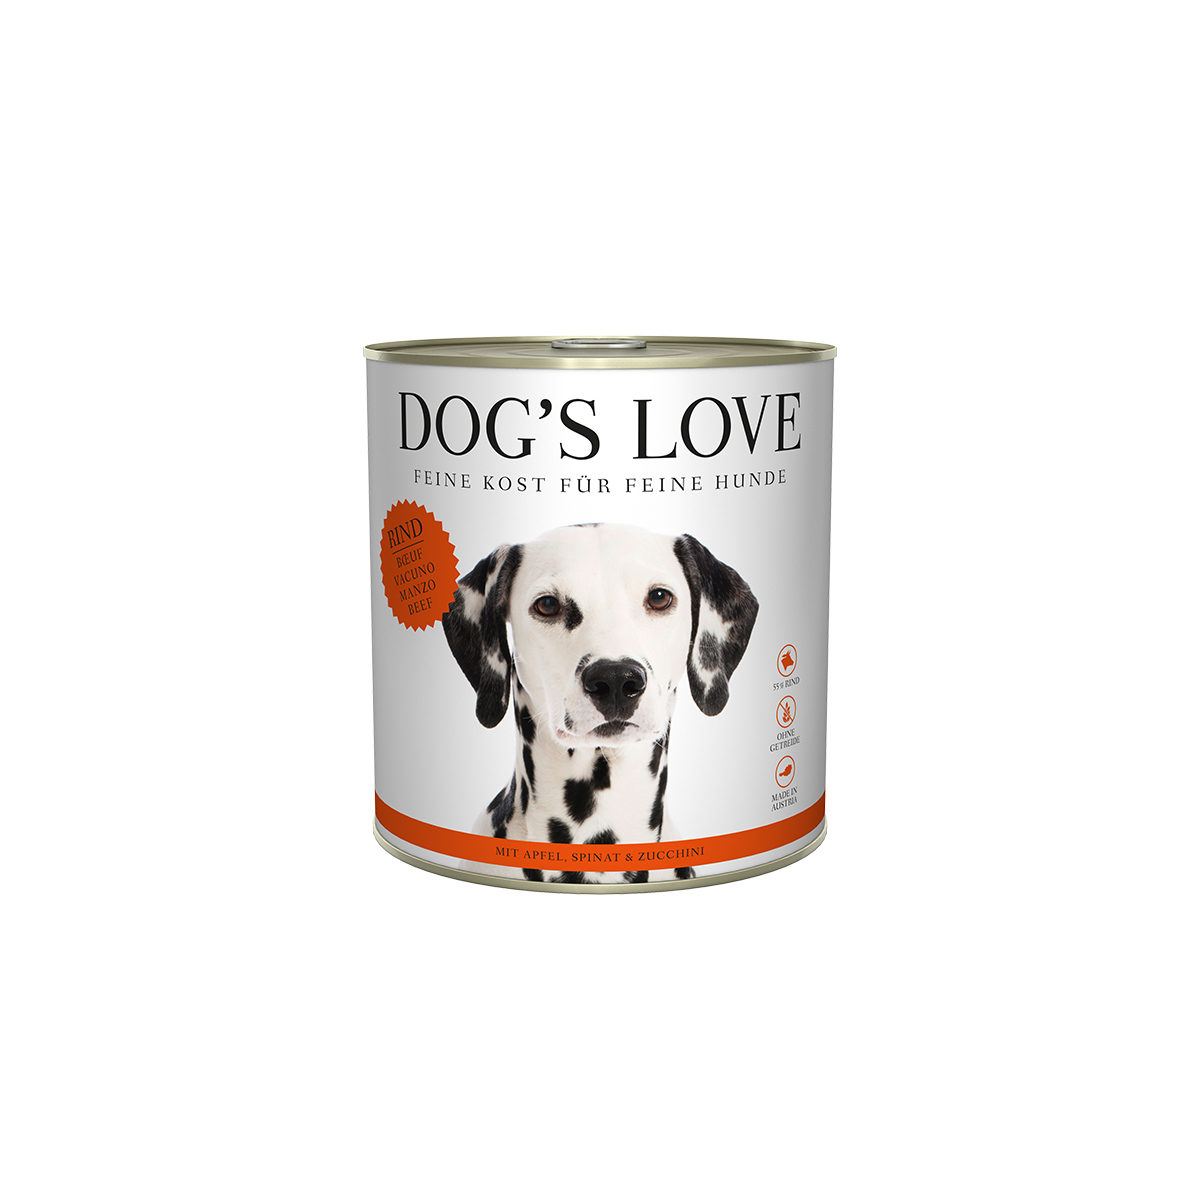 Dog's Love Classic Rind mit Apfel, Spinat und Zucchini 6x800g